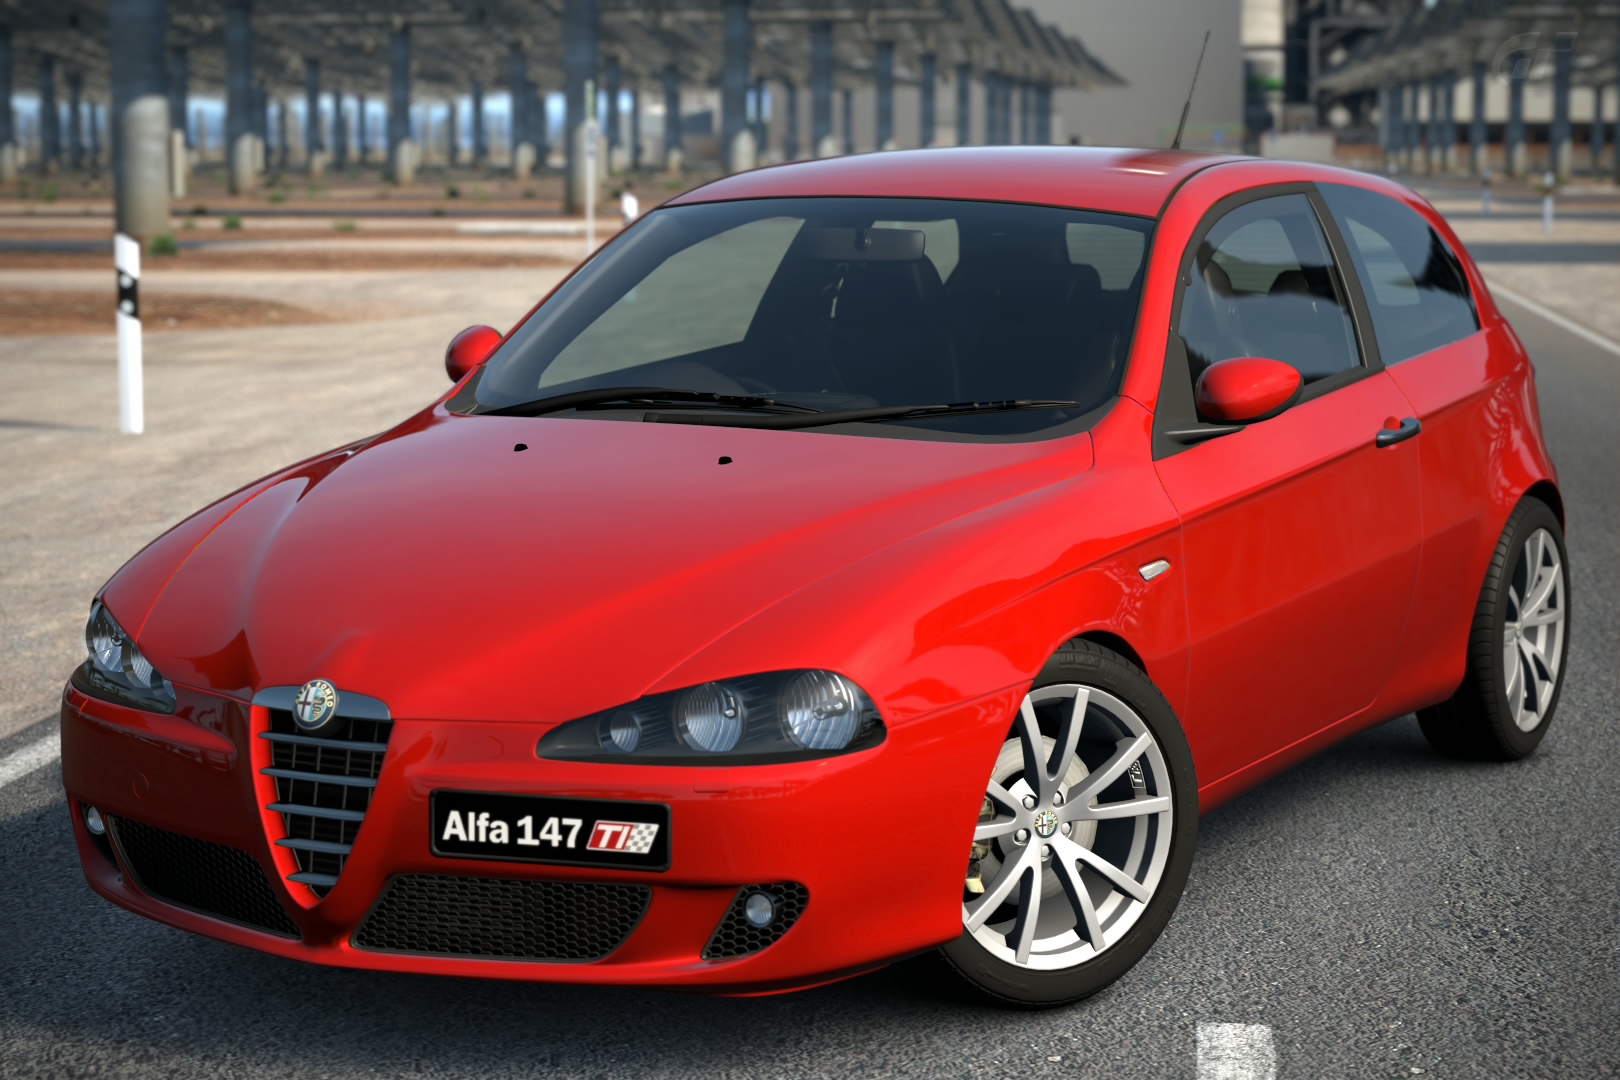 Alfa Romeo 147 TI 2.0 TWIN SPARK '06, Gran Turismo Wiki